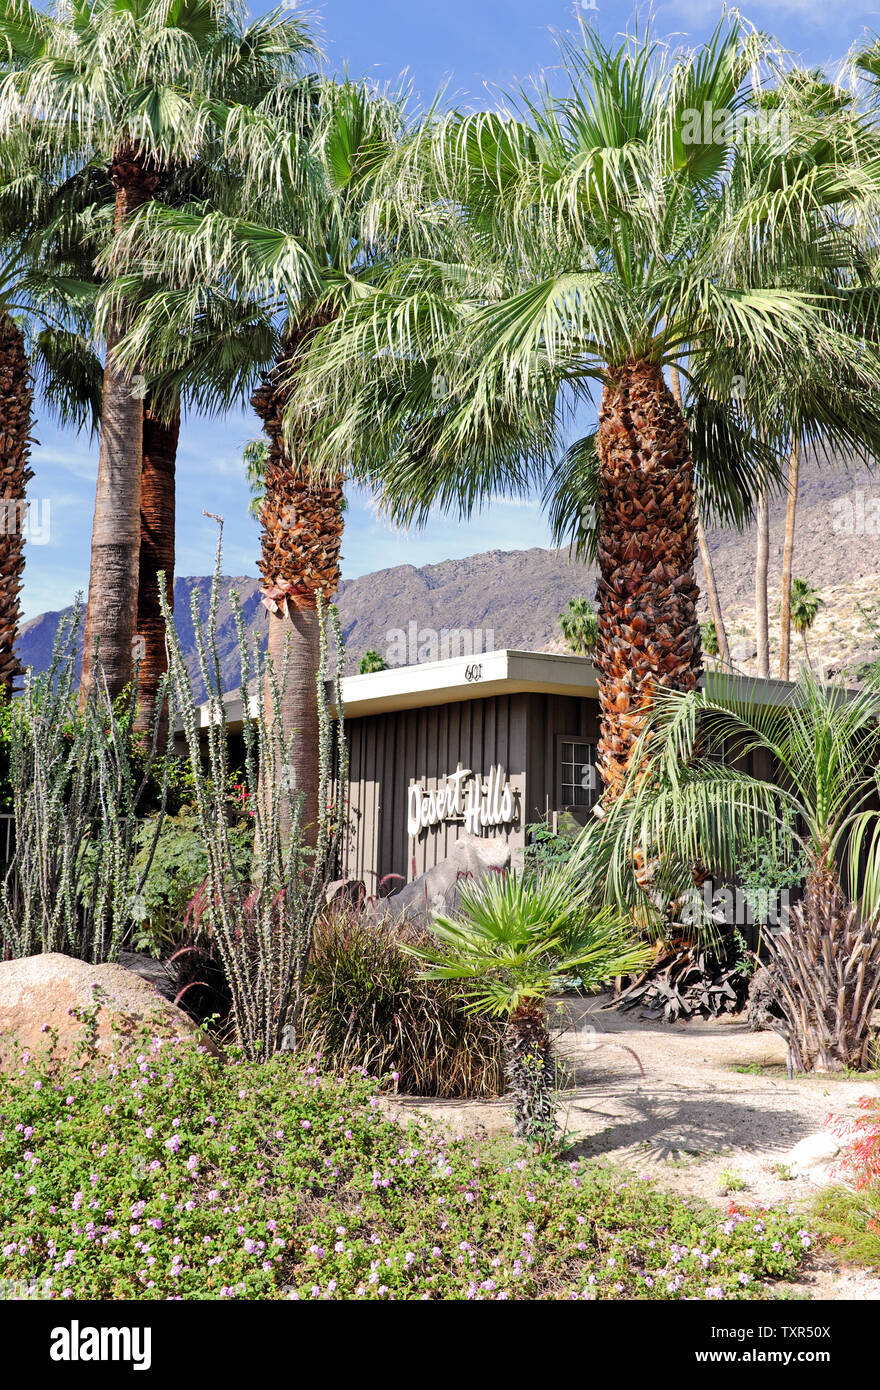 Das von Herbert Burns entworfene Desert Hills Hotel im Viertel Tennis Club in Palm Springs, Kalifornien, wurde 1956 als 9-Zimmer-Apartmenthotel eröffnet. Stockfoto